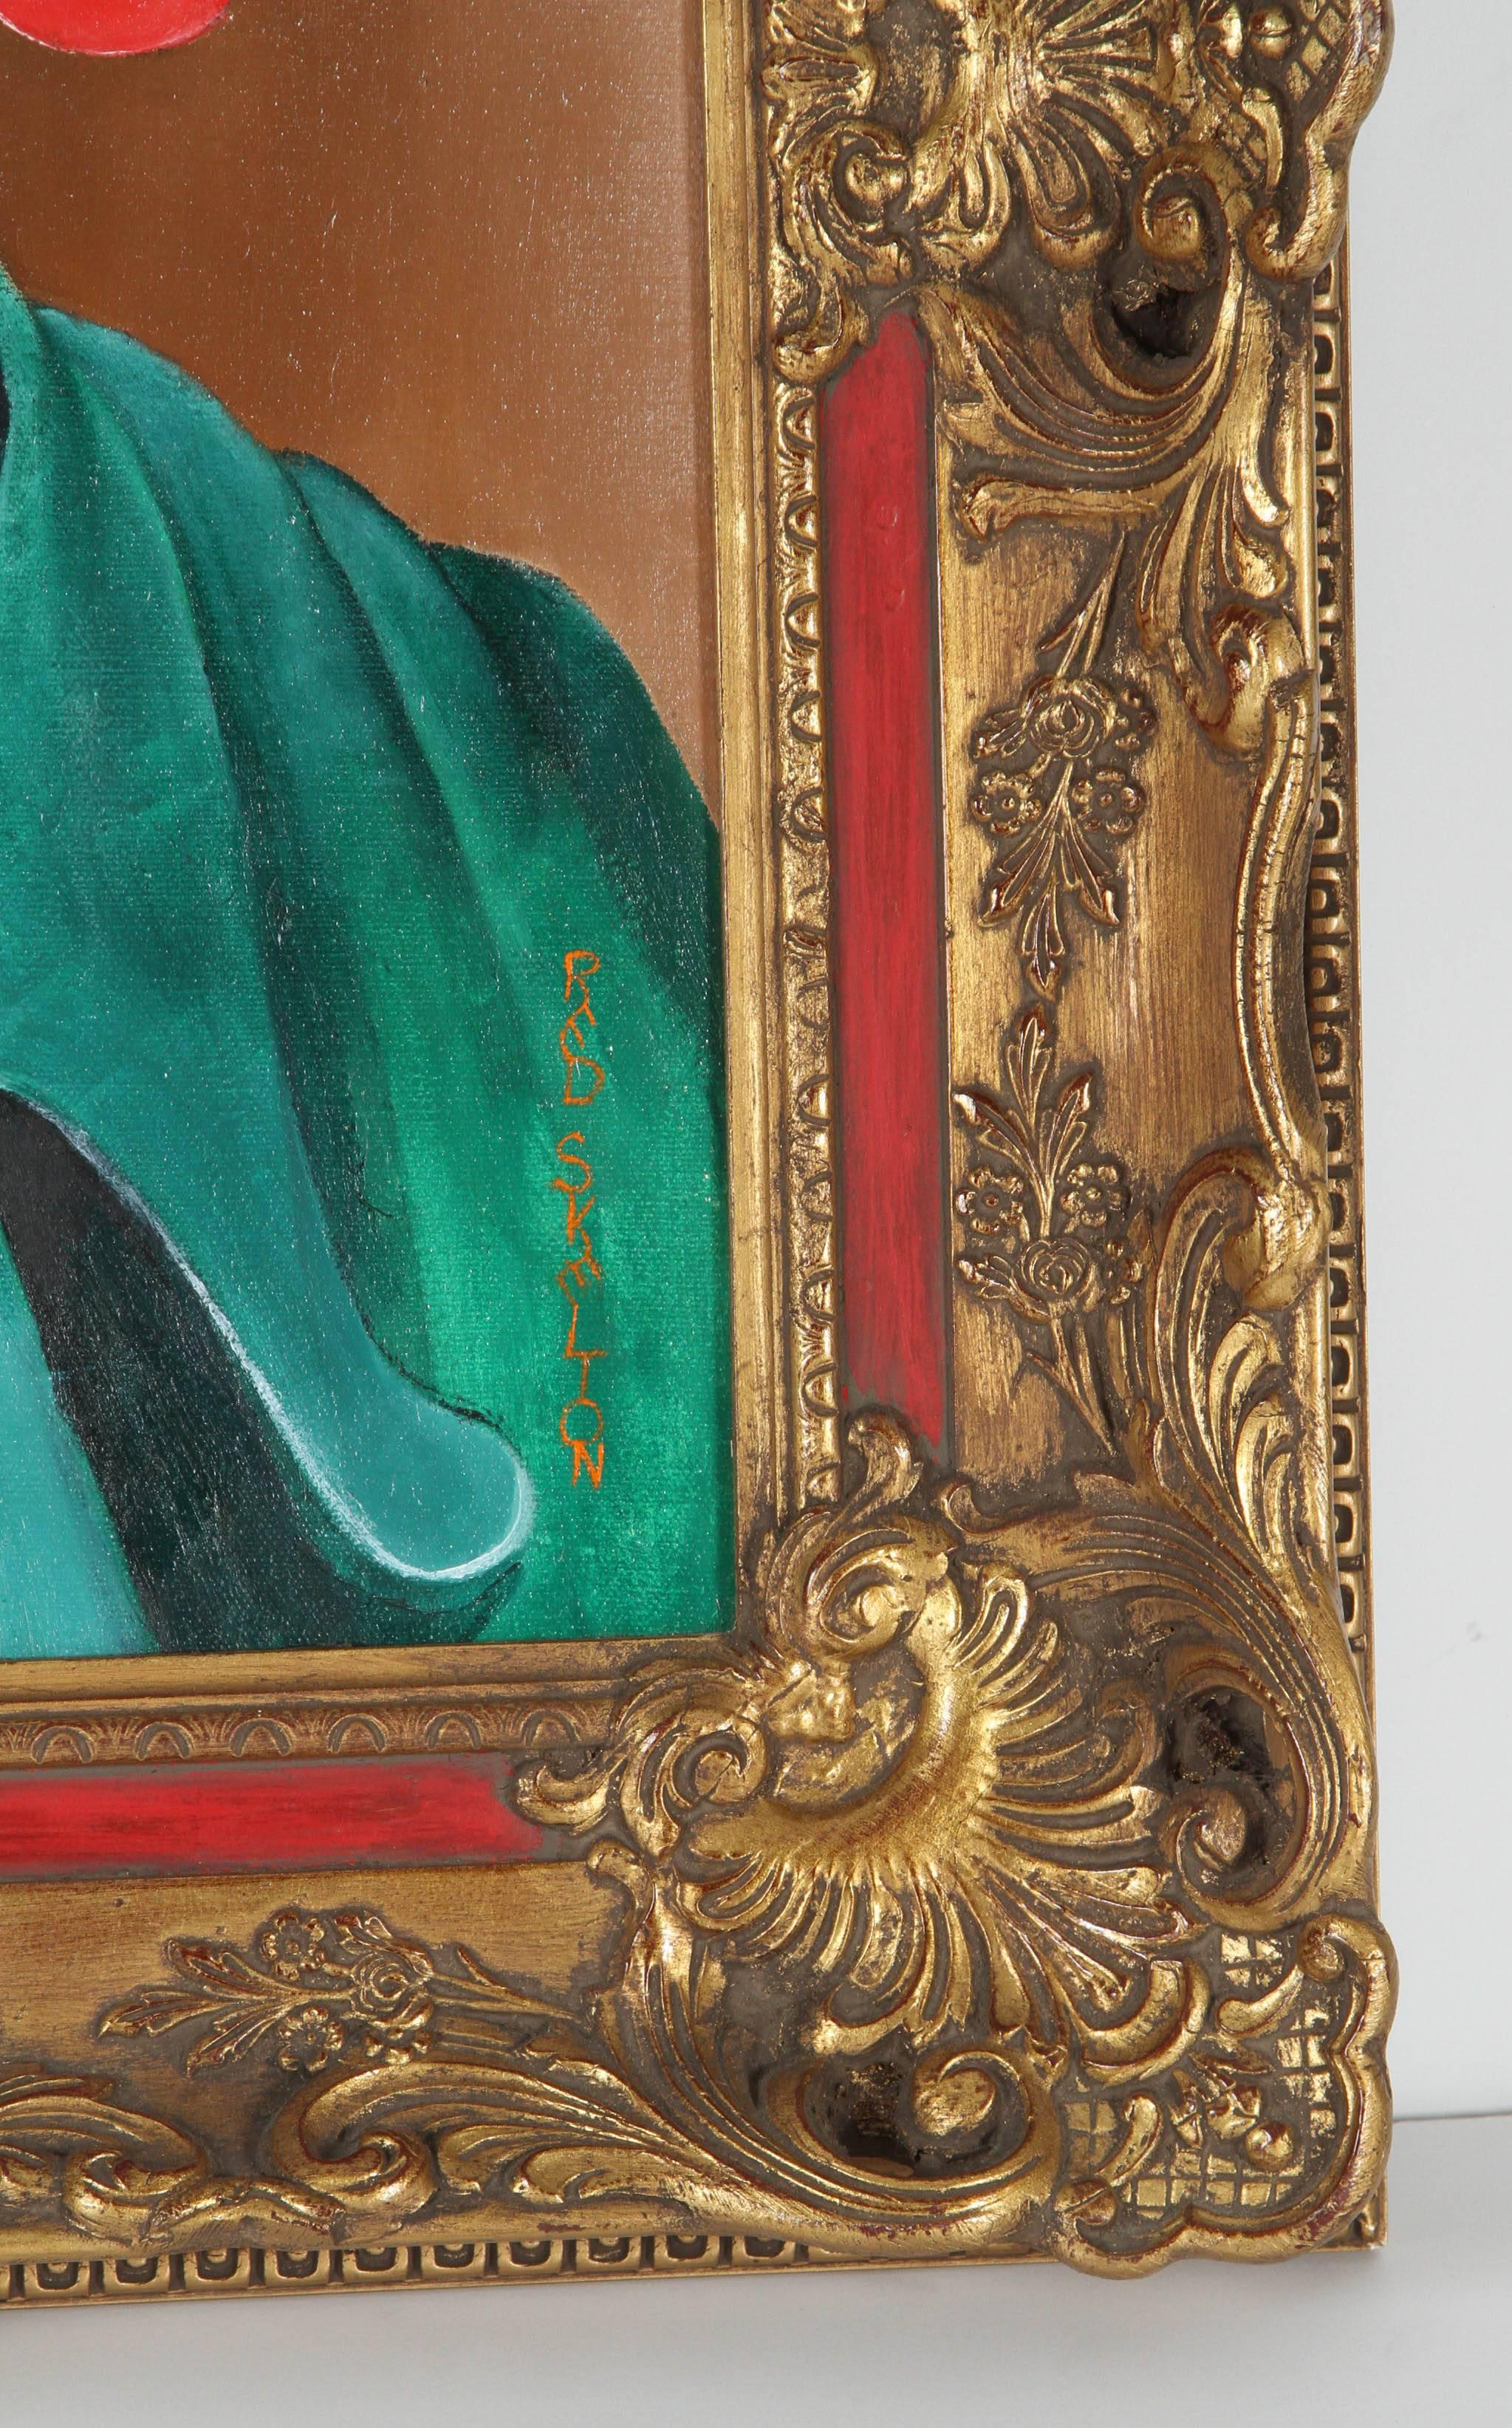 Peinture à l'huile originale signée de Red Skelton représentant un clown avec un sucre d'orge. Le cadre n'est pas ancien. Les mesures de l'image sont : 16 pouces de large x 20 pouces de haut x 1::5 pouces de profondeur.